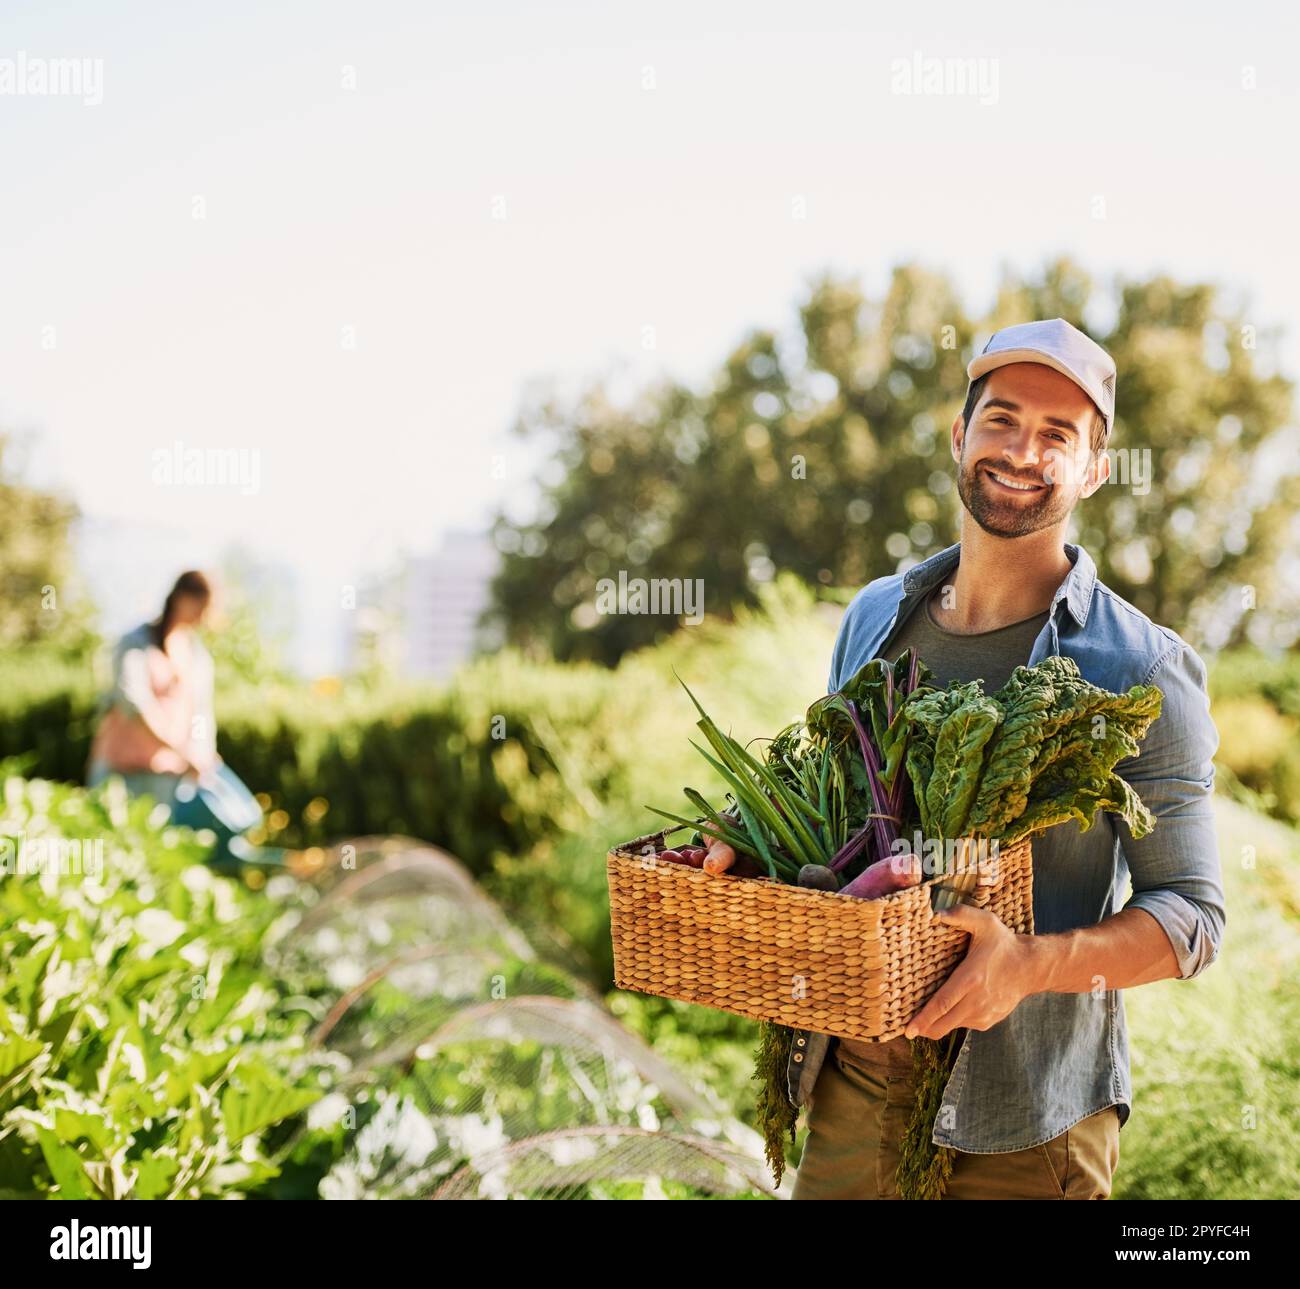 Noi cresciamo solo il meglio. Ritratto di un giovane contadino felice che raccoglie erbe e verdure in un cestino della sua fattoria. Foto Stock